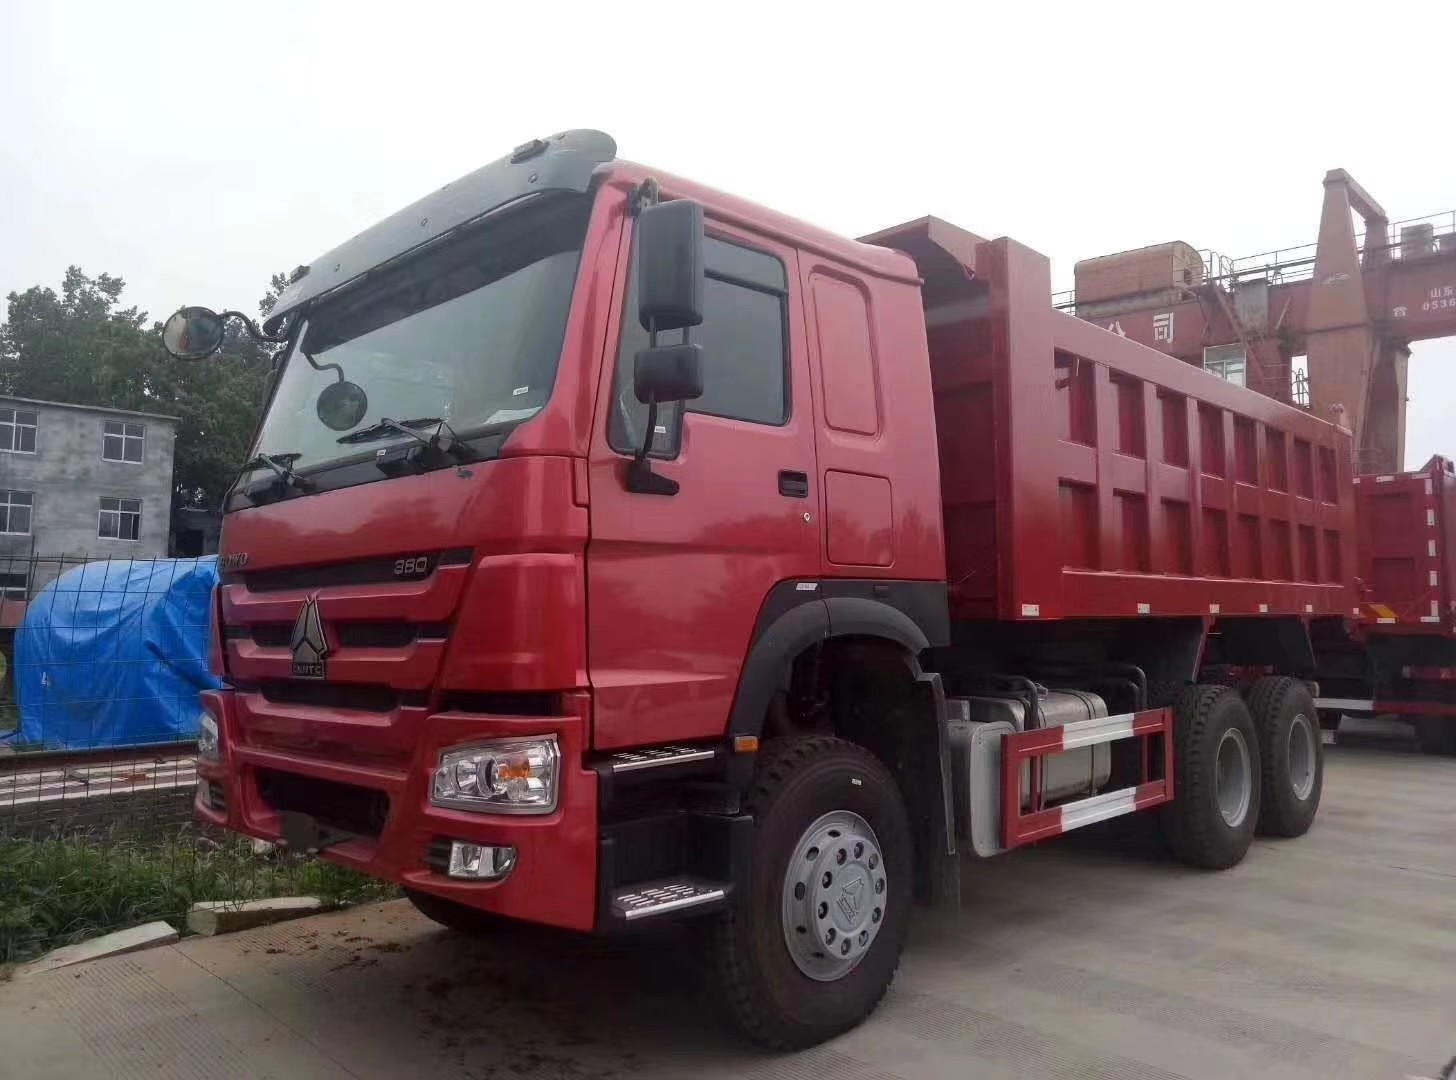 ZF8118 संचालन के साथ लाल हैवी ड्यूटी डंप ट्रक यूरो 2 उत्सर्जन मानक